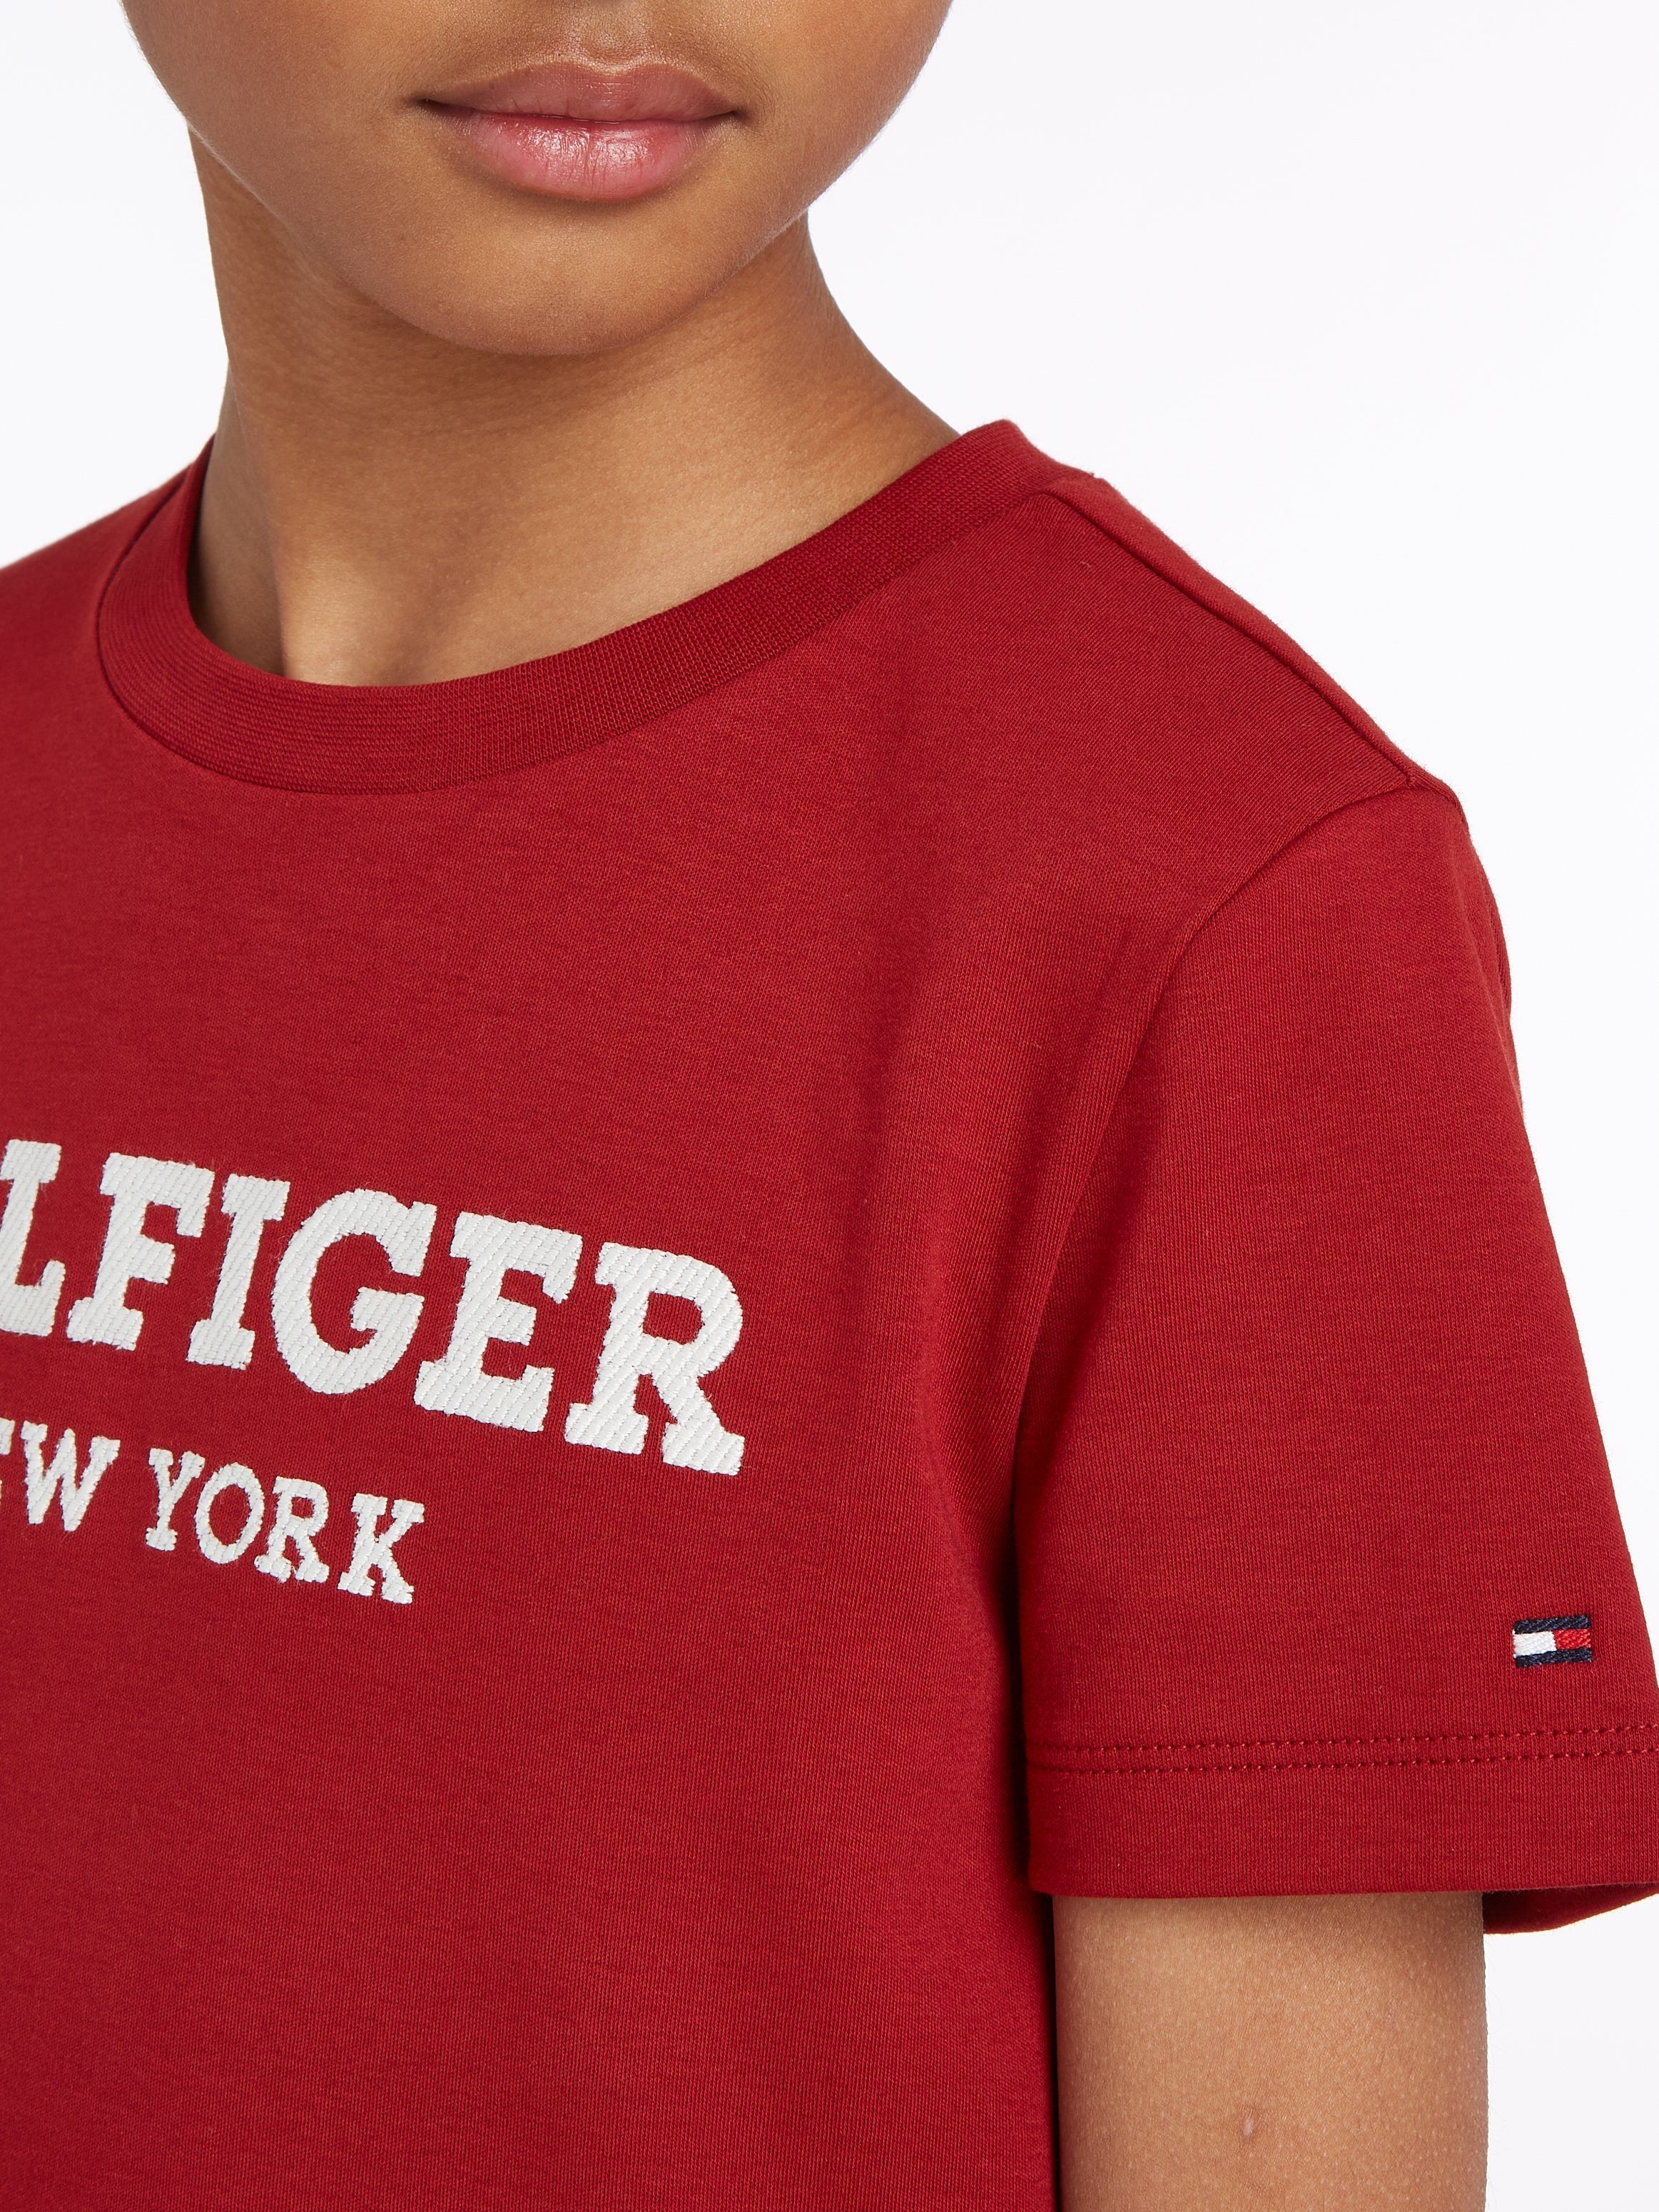 Hilfiger S/S Tommy Hilfiger Statement LOGO Rouge T-Shirt Print mit HILFIGER TEE